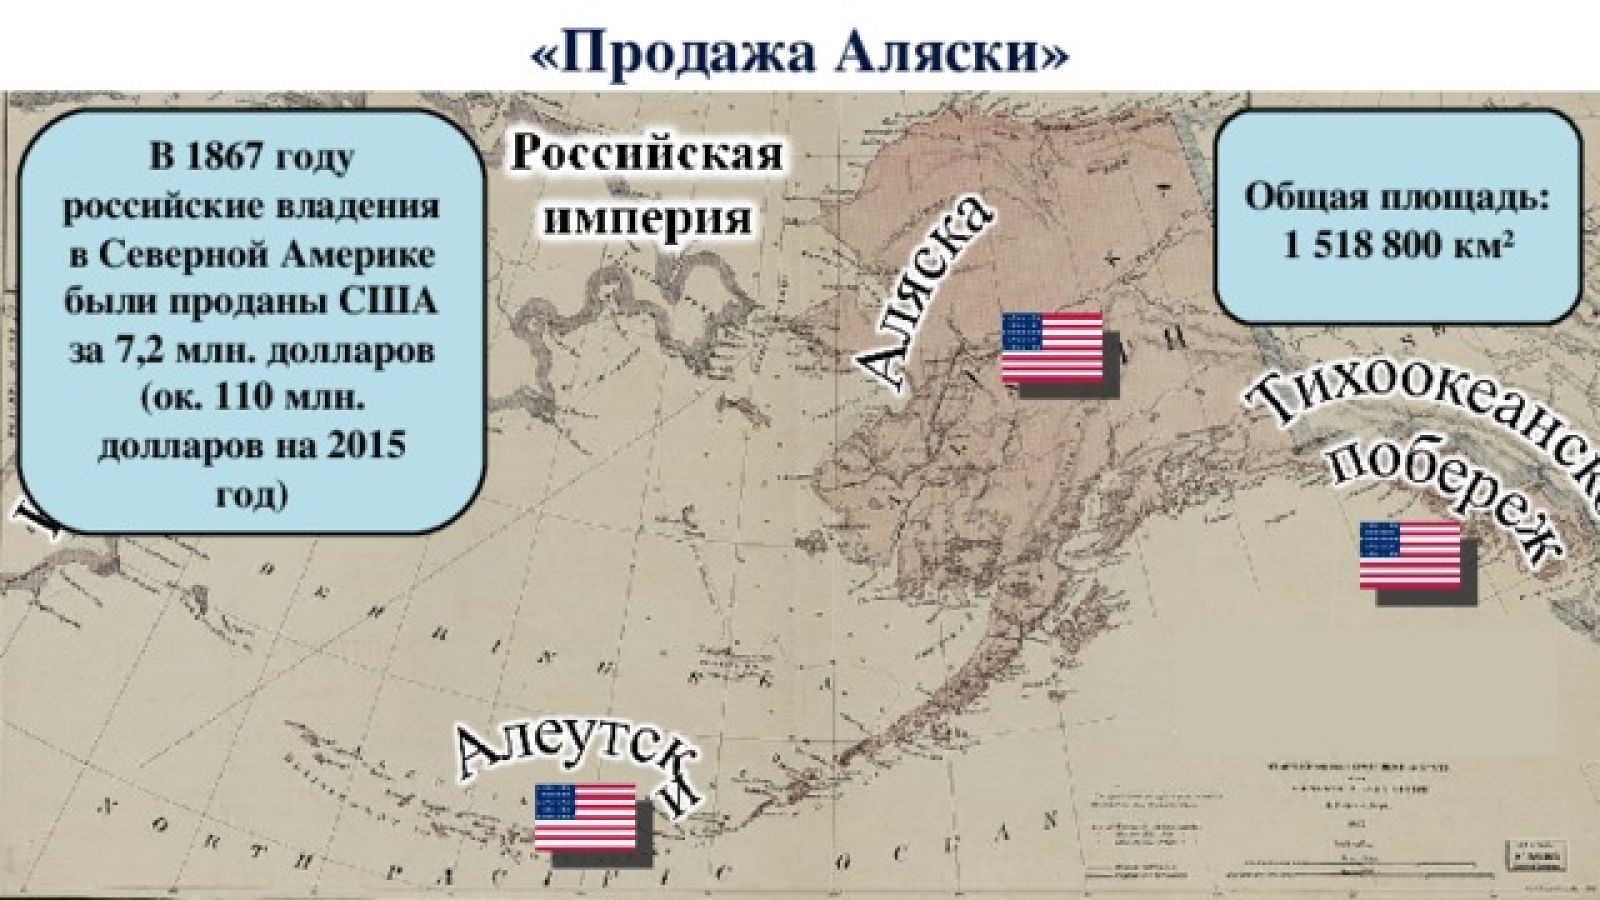 18 Октября 1867 года Аляска передана США. 1867 – Россия продала Аляску США. Территория продана Россией США В 1867 году. 1867 Год передача Аляски США.